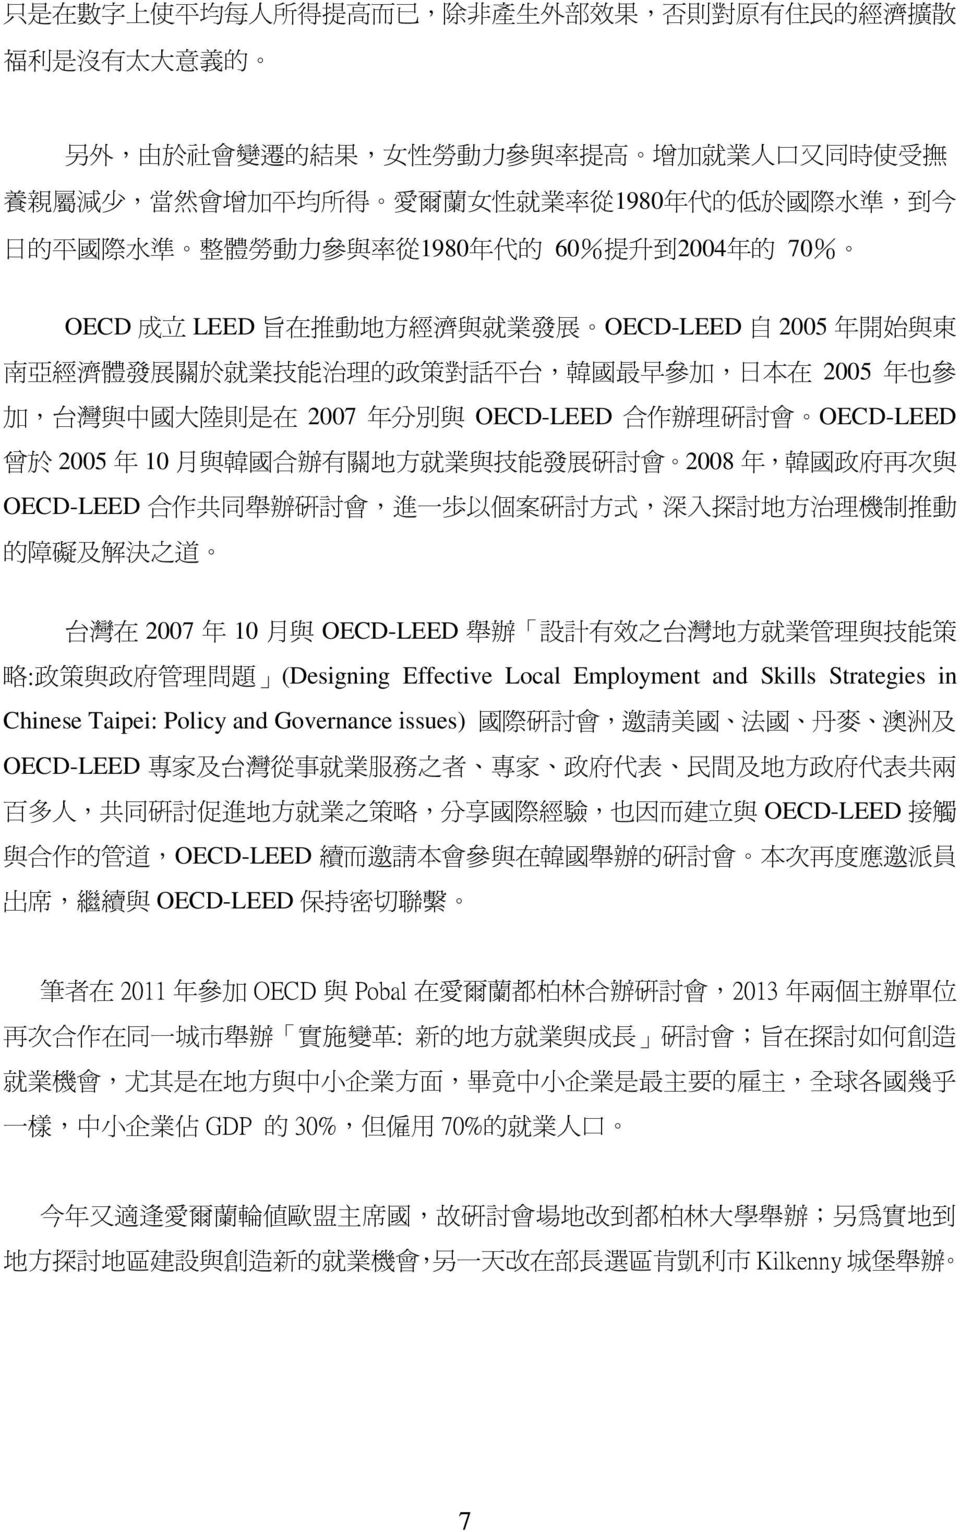 治 理 的 政 策 對 話 平 台, 韓 國 最 早 參 加, 日 本 在 2005 年 也 參 加, 台 灣 與 中 國 大 陸 則 是 在 2007 年 分 別 與 OECD-LEED 合 作 辦 理 研 討 會 OECD-LEED 曾 於 2005 年 10 月 與 韓 國 合 辦 有 關 地 方 就 業 與 技 能 發 展 研 討 會 2008 年, 韓 國 政 府 再 次 與